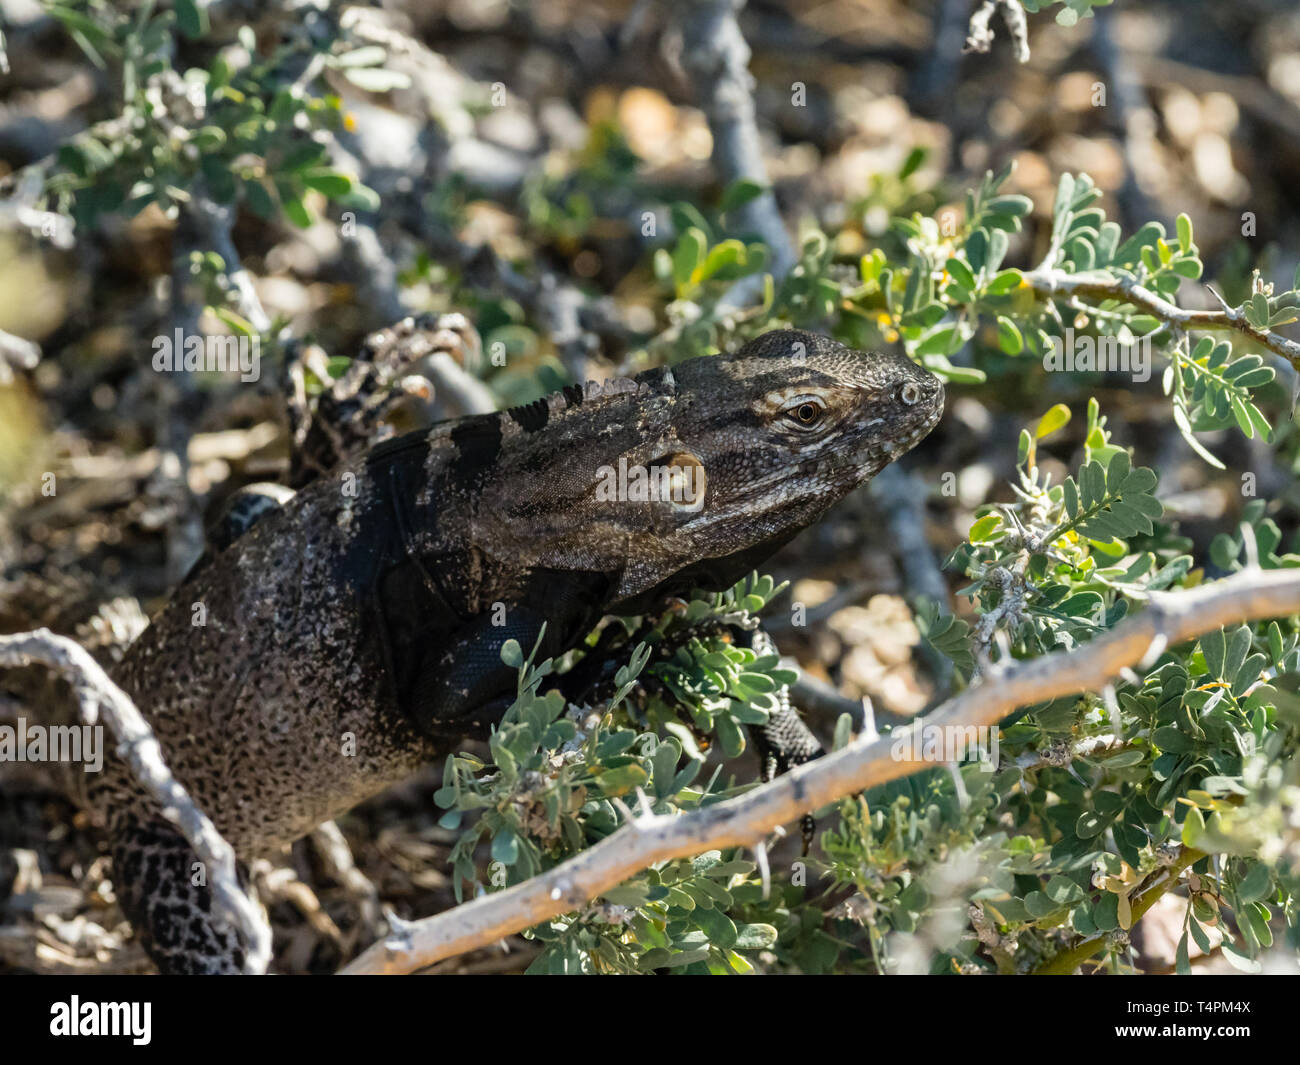 San Esteban spinoso-tailed Iguana, Ctenosaura conspicuosa, endemico a Baja California Messico Foto Stock